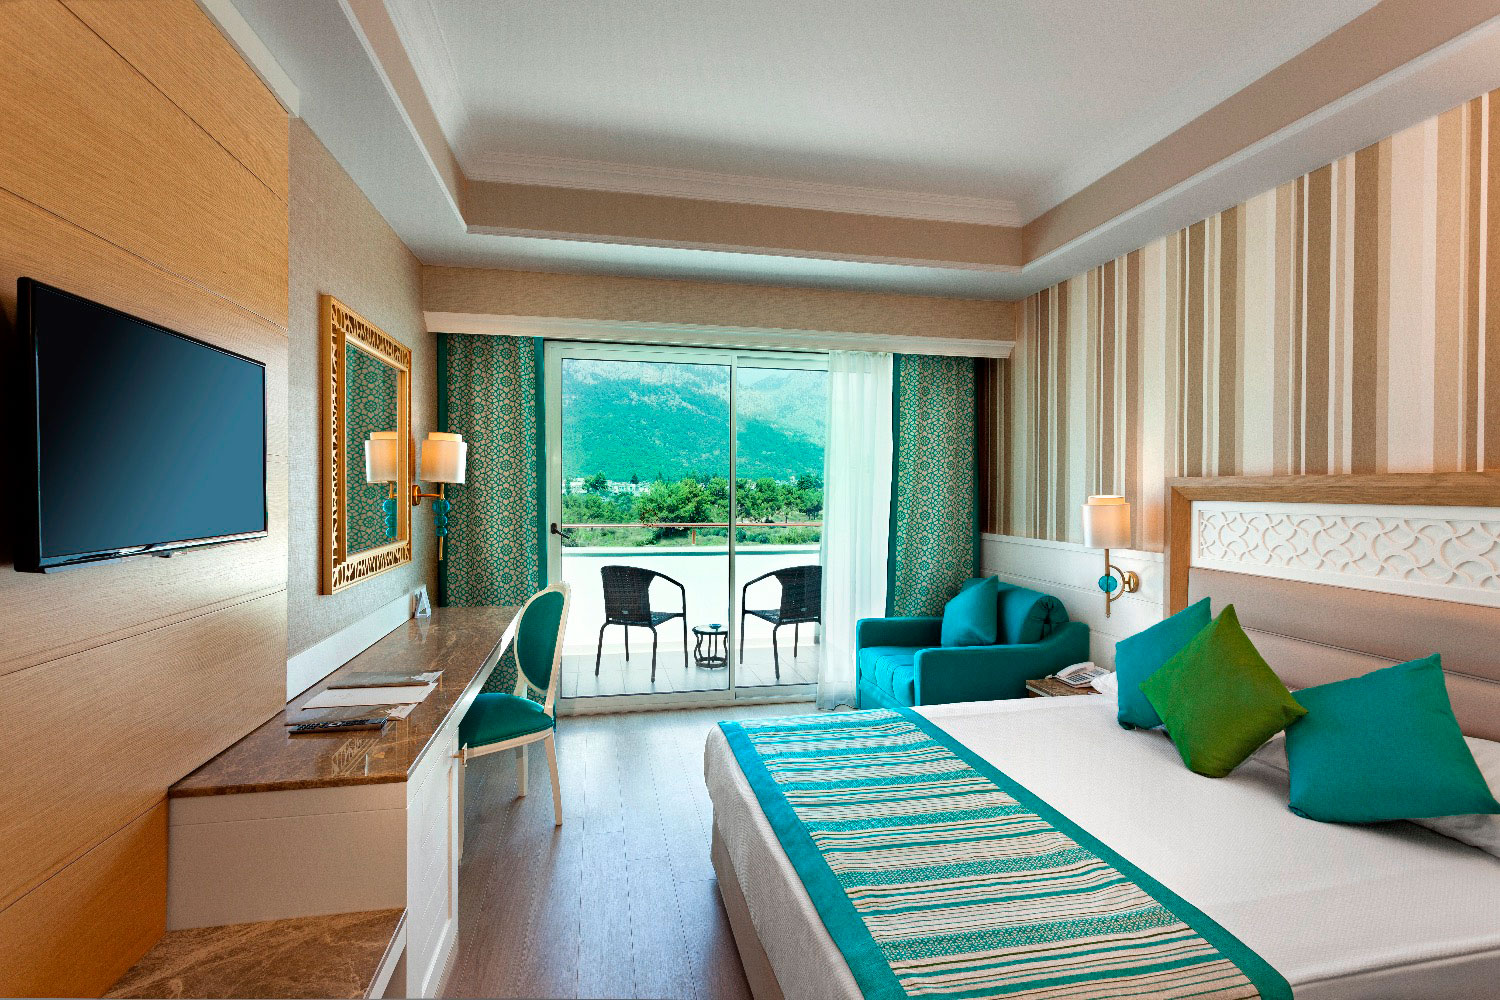 Letovanje Turska,avionom, Alanja, hotel Karmir resort & SPA,hotelska soba